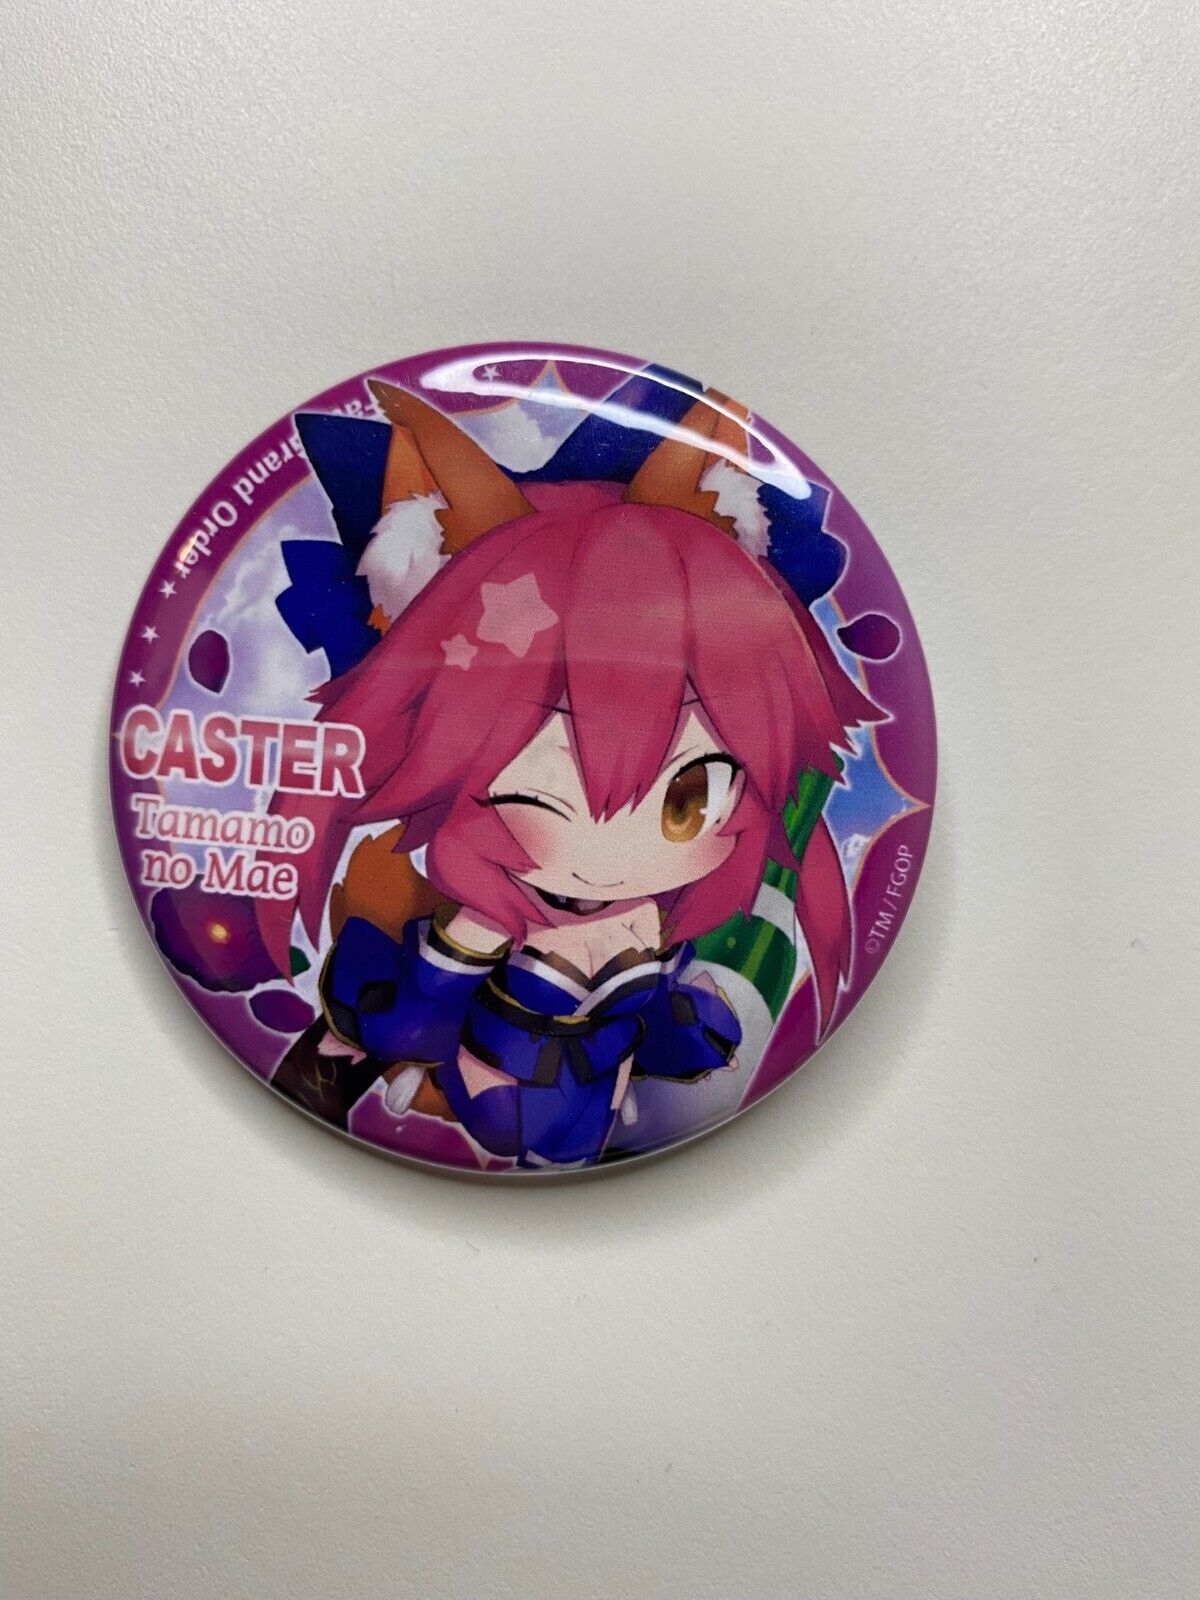 Fate Grand Order FGO Caster Tamamo no Mae Chibi Badge Button US Seller